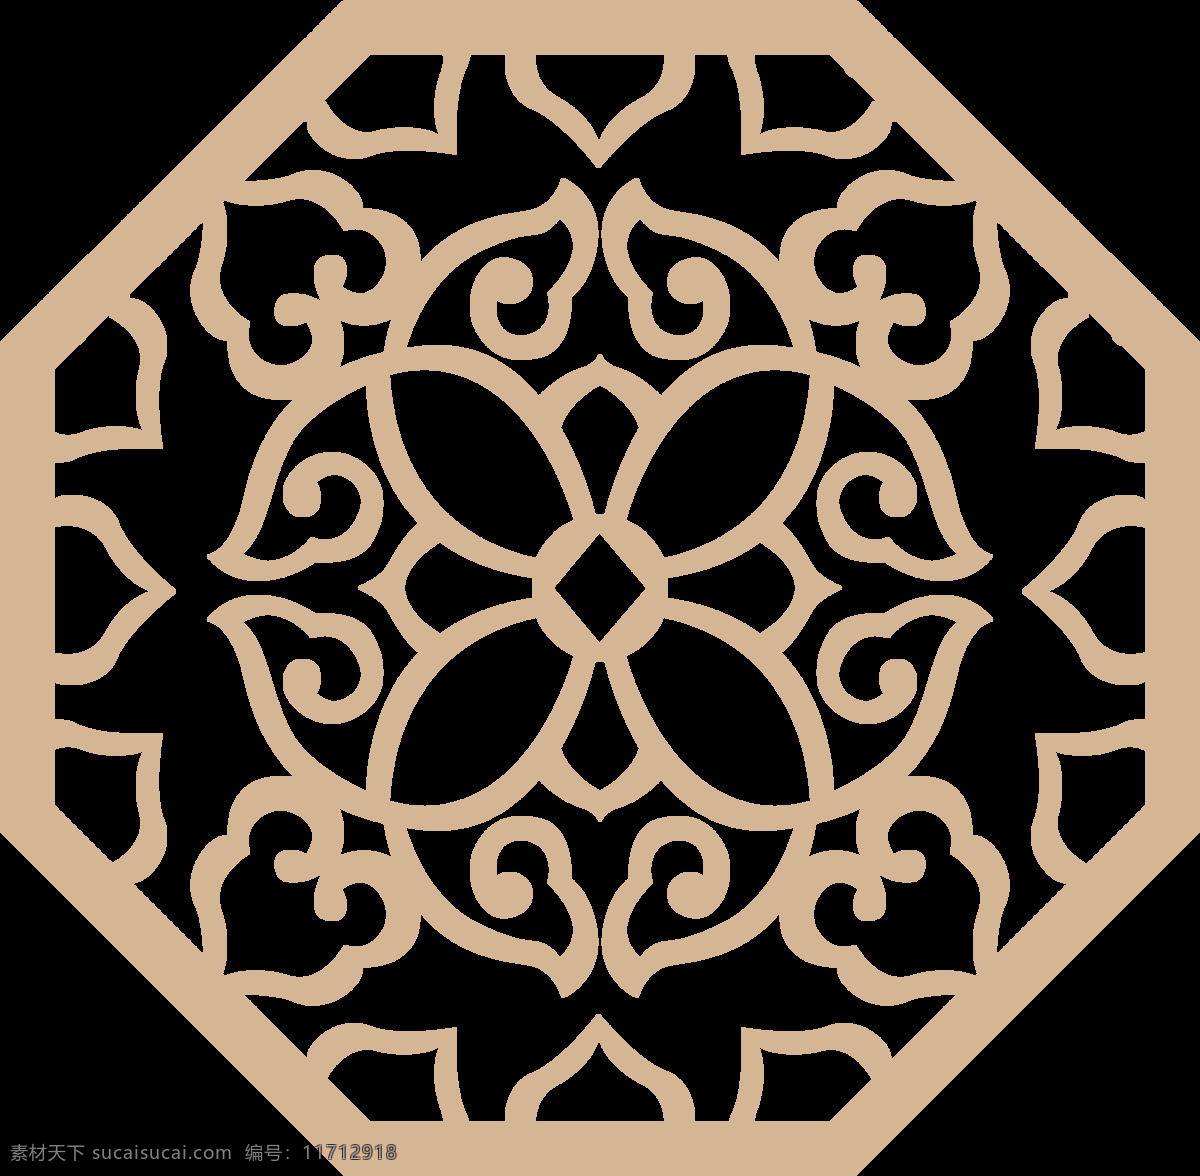 中式 传统图案 花纹 矢量 圆形 中式花样 窗花 镂空雕花 圆形雕花 设计图 底纹边框 花边花纹